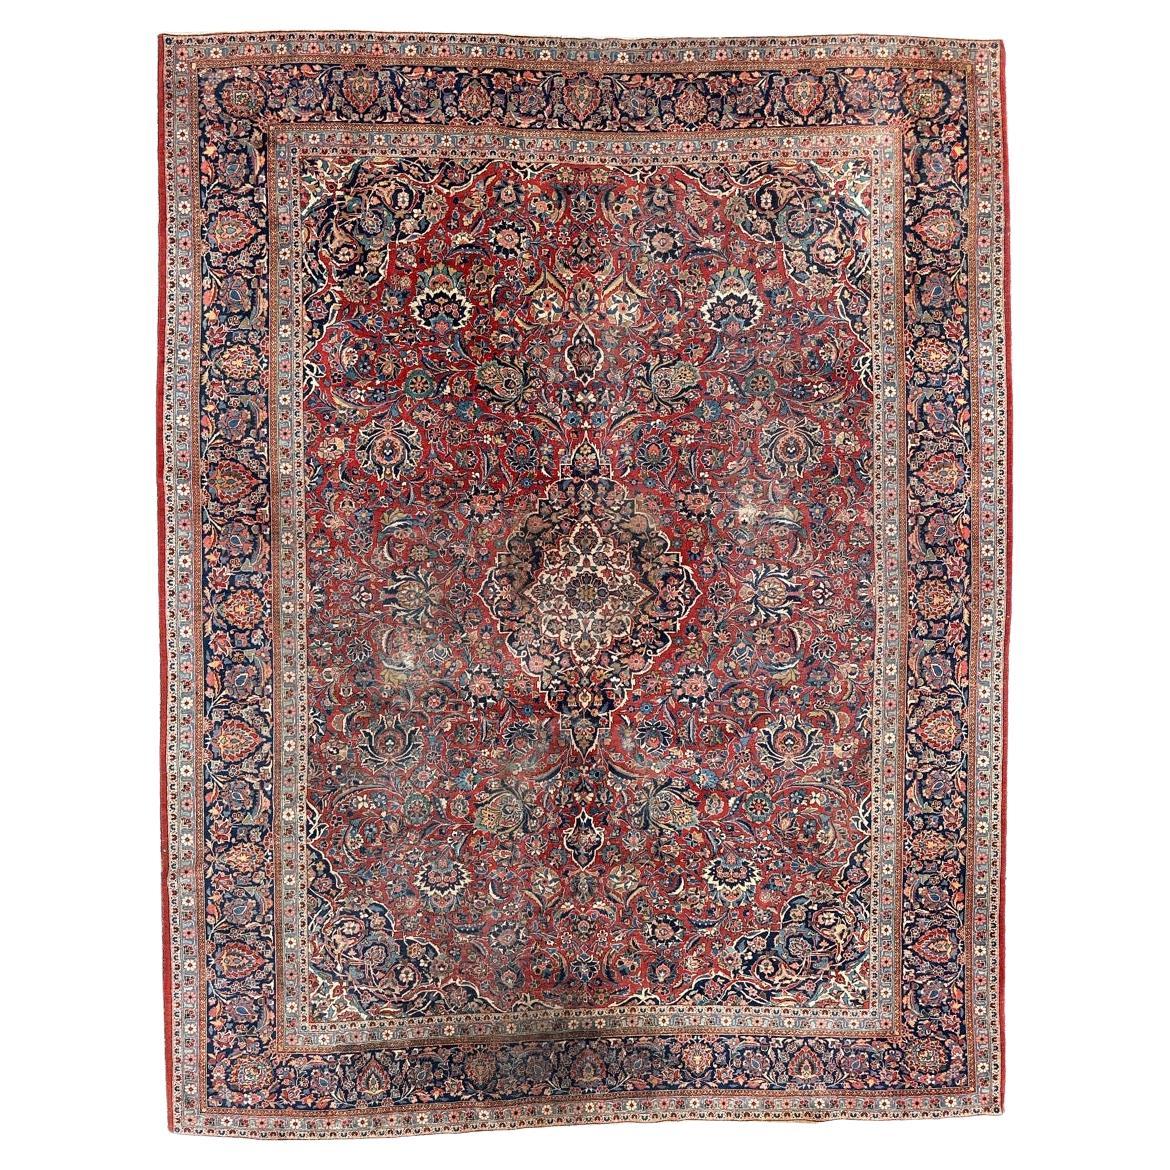 Bobyrug's Schöner antiker großer Kashan-Teppich 